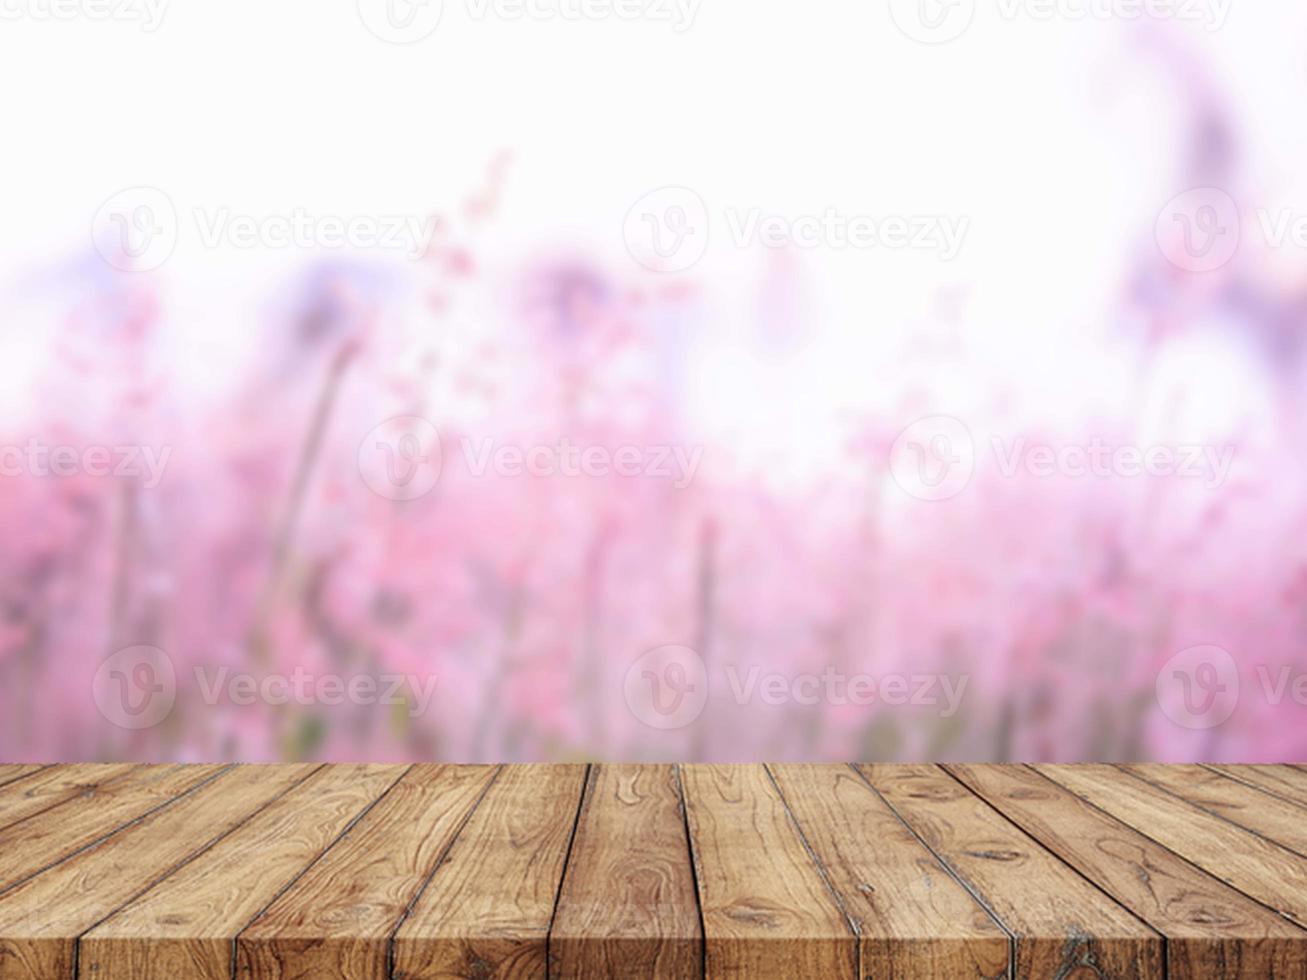 sfondo per tavolo in legno foto